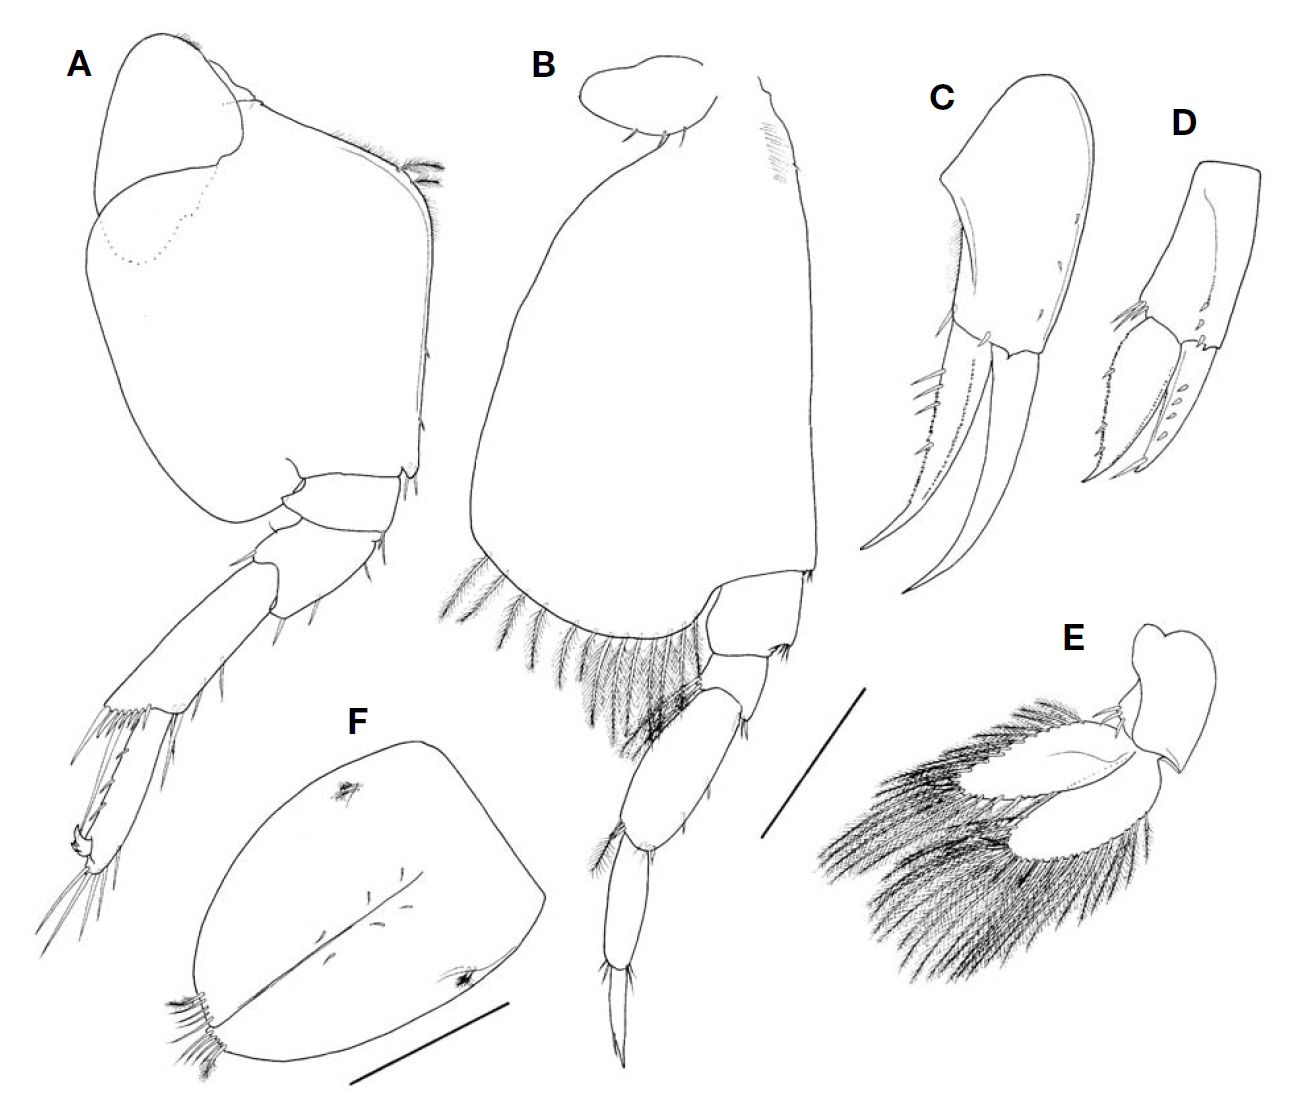 Ampelisca alatopedunculata Ren male 6.9 mm. A Pereopod 6; B Pereopod 7; C Uropod 1; D Uropod 2; E Uropod 3; F Telson. Scale bars: A-E=0.4 mm F=0.2 mm.